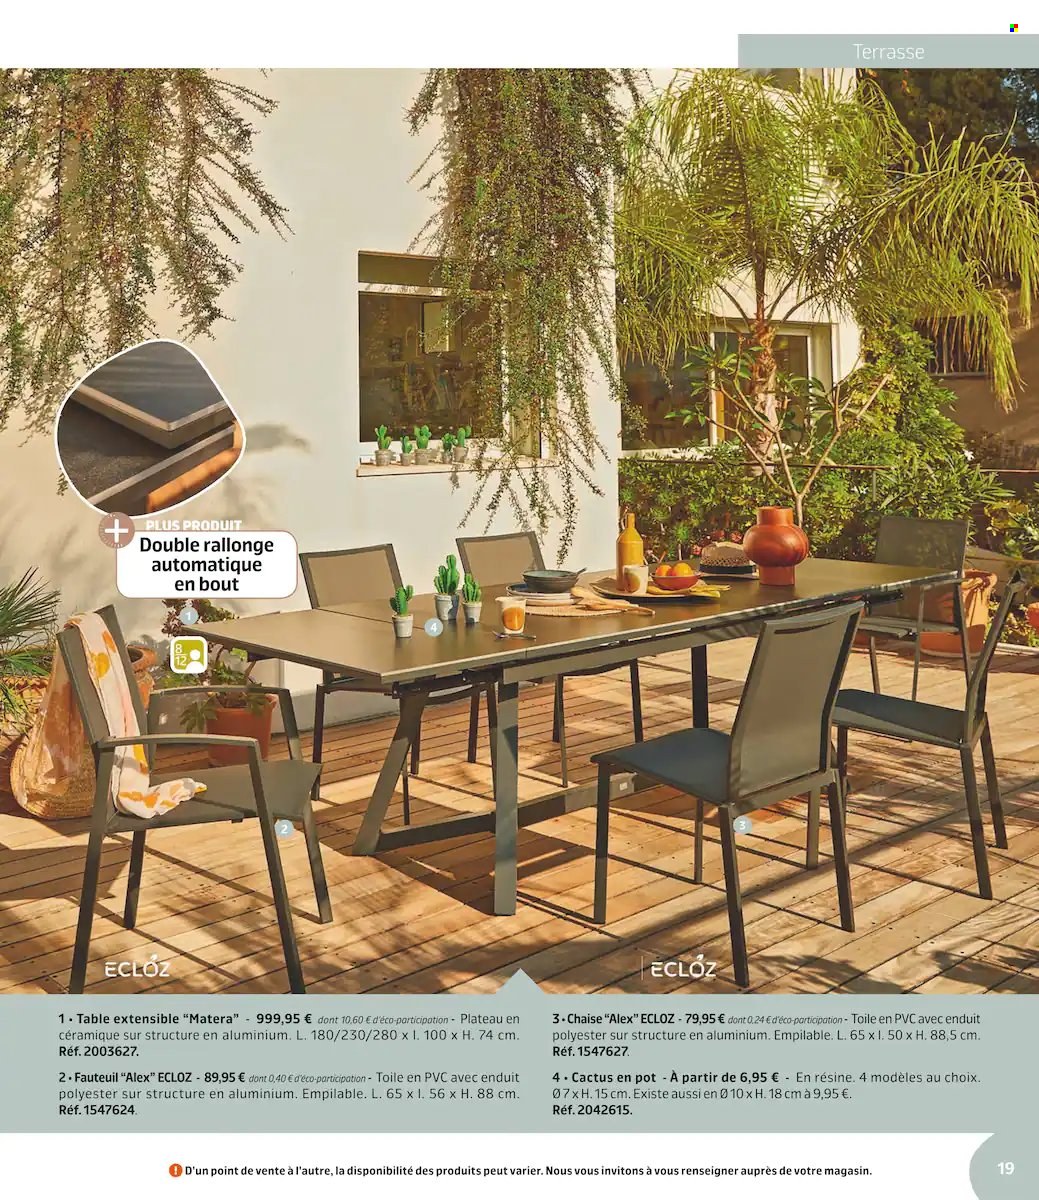 thumbnail - Catalogue Jardiland - 01/03/2022 - 19/06/2022 - Produits soldés - table, table extensible, fauteuil, chaise, cactus. Page 19.